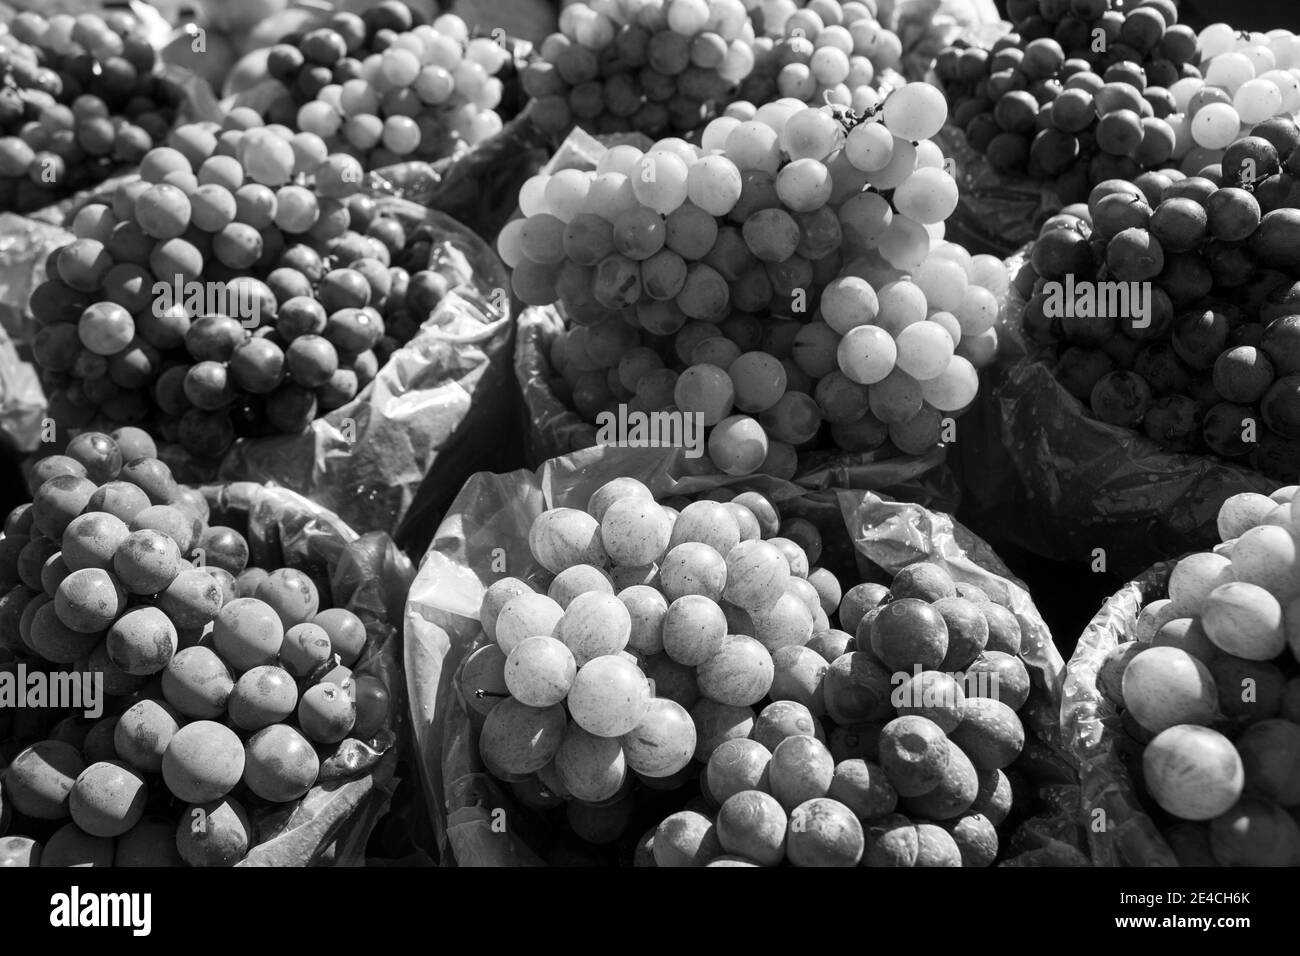 Pile di uve verdi e rosse/viola esposte all'aperto con il sole che illumina i frutti che sta vendendo In un mercato [Bianco e nero] Foto Stock